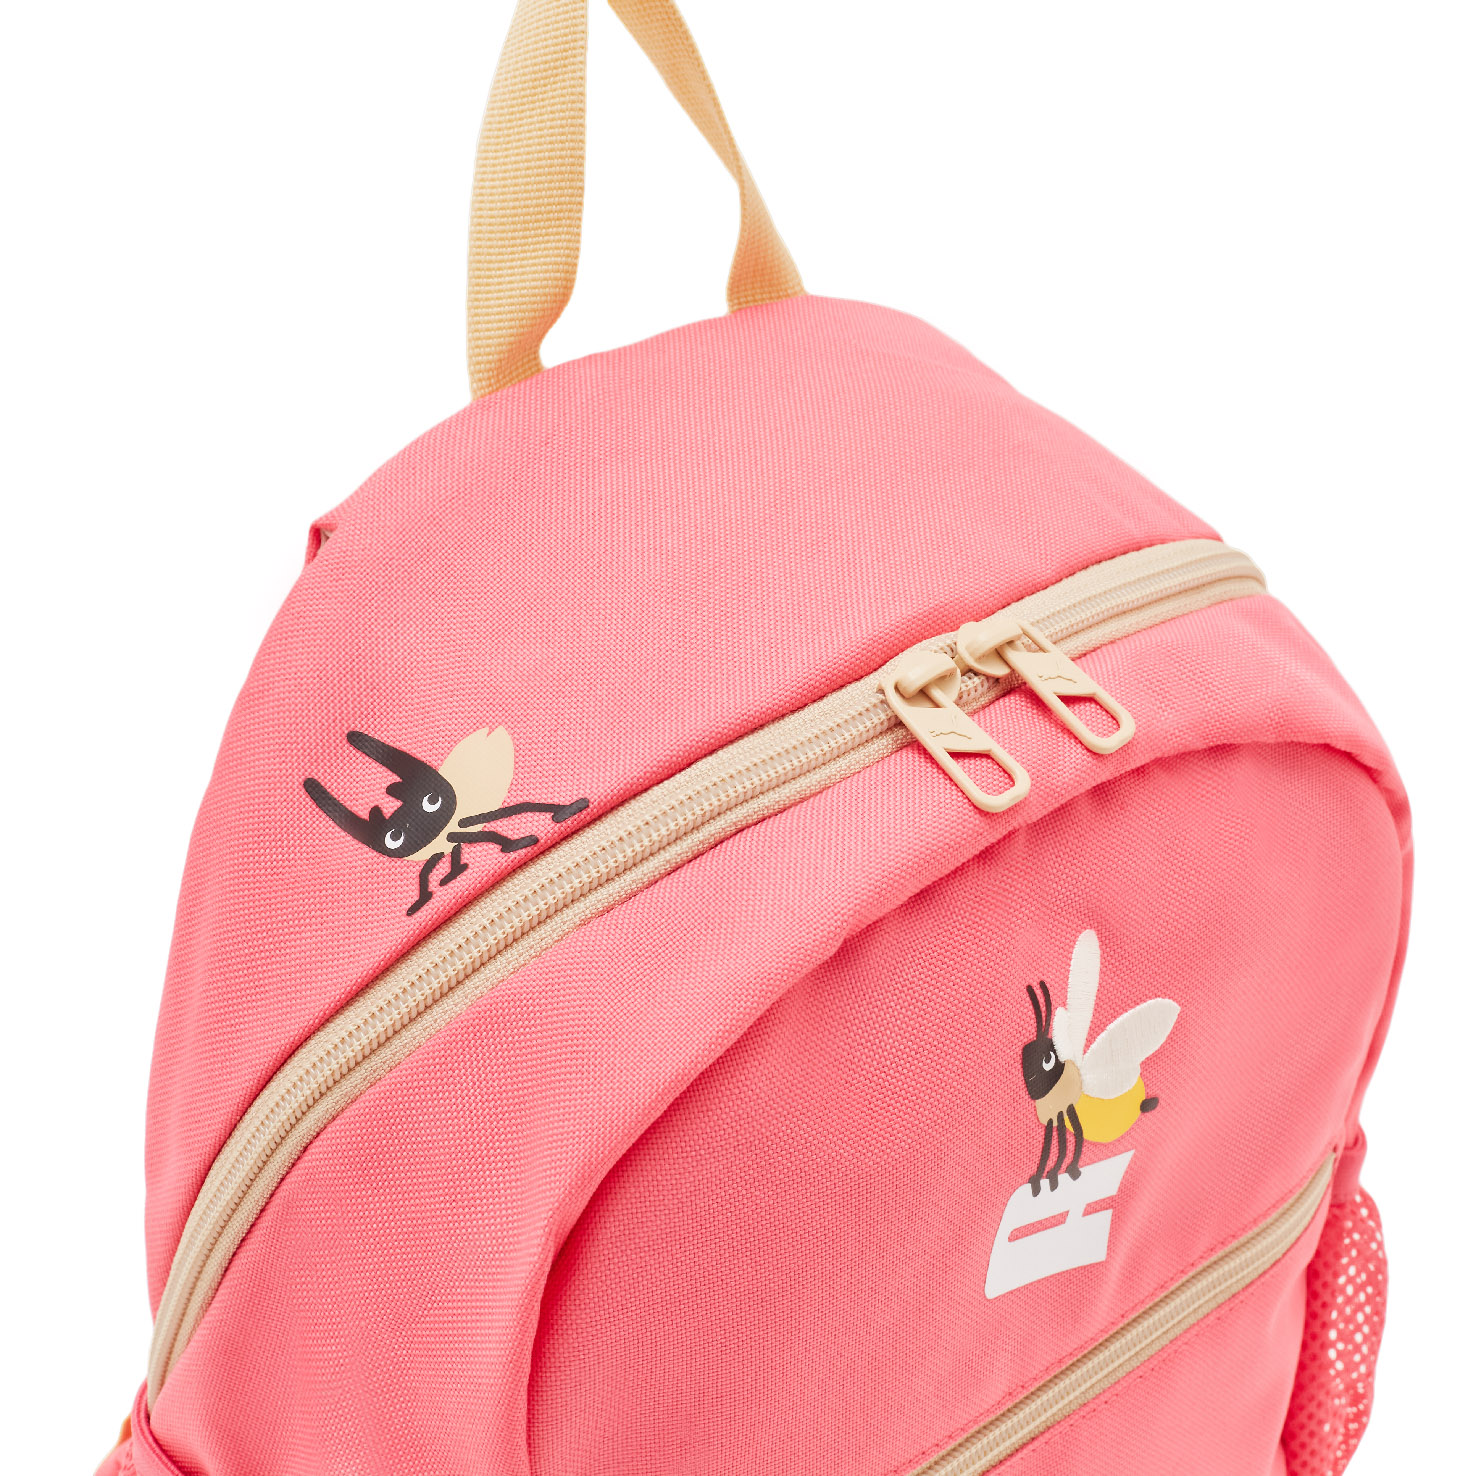 Small World Backpack PUMA, размер Один размер, цвет розовый PM079203 - фото 5